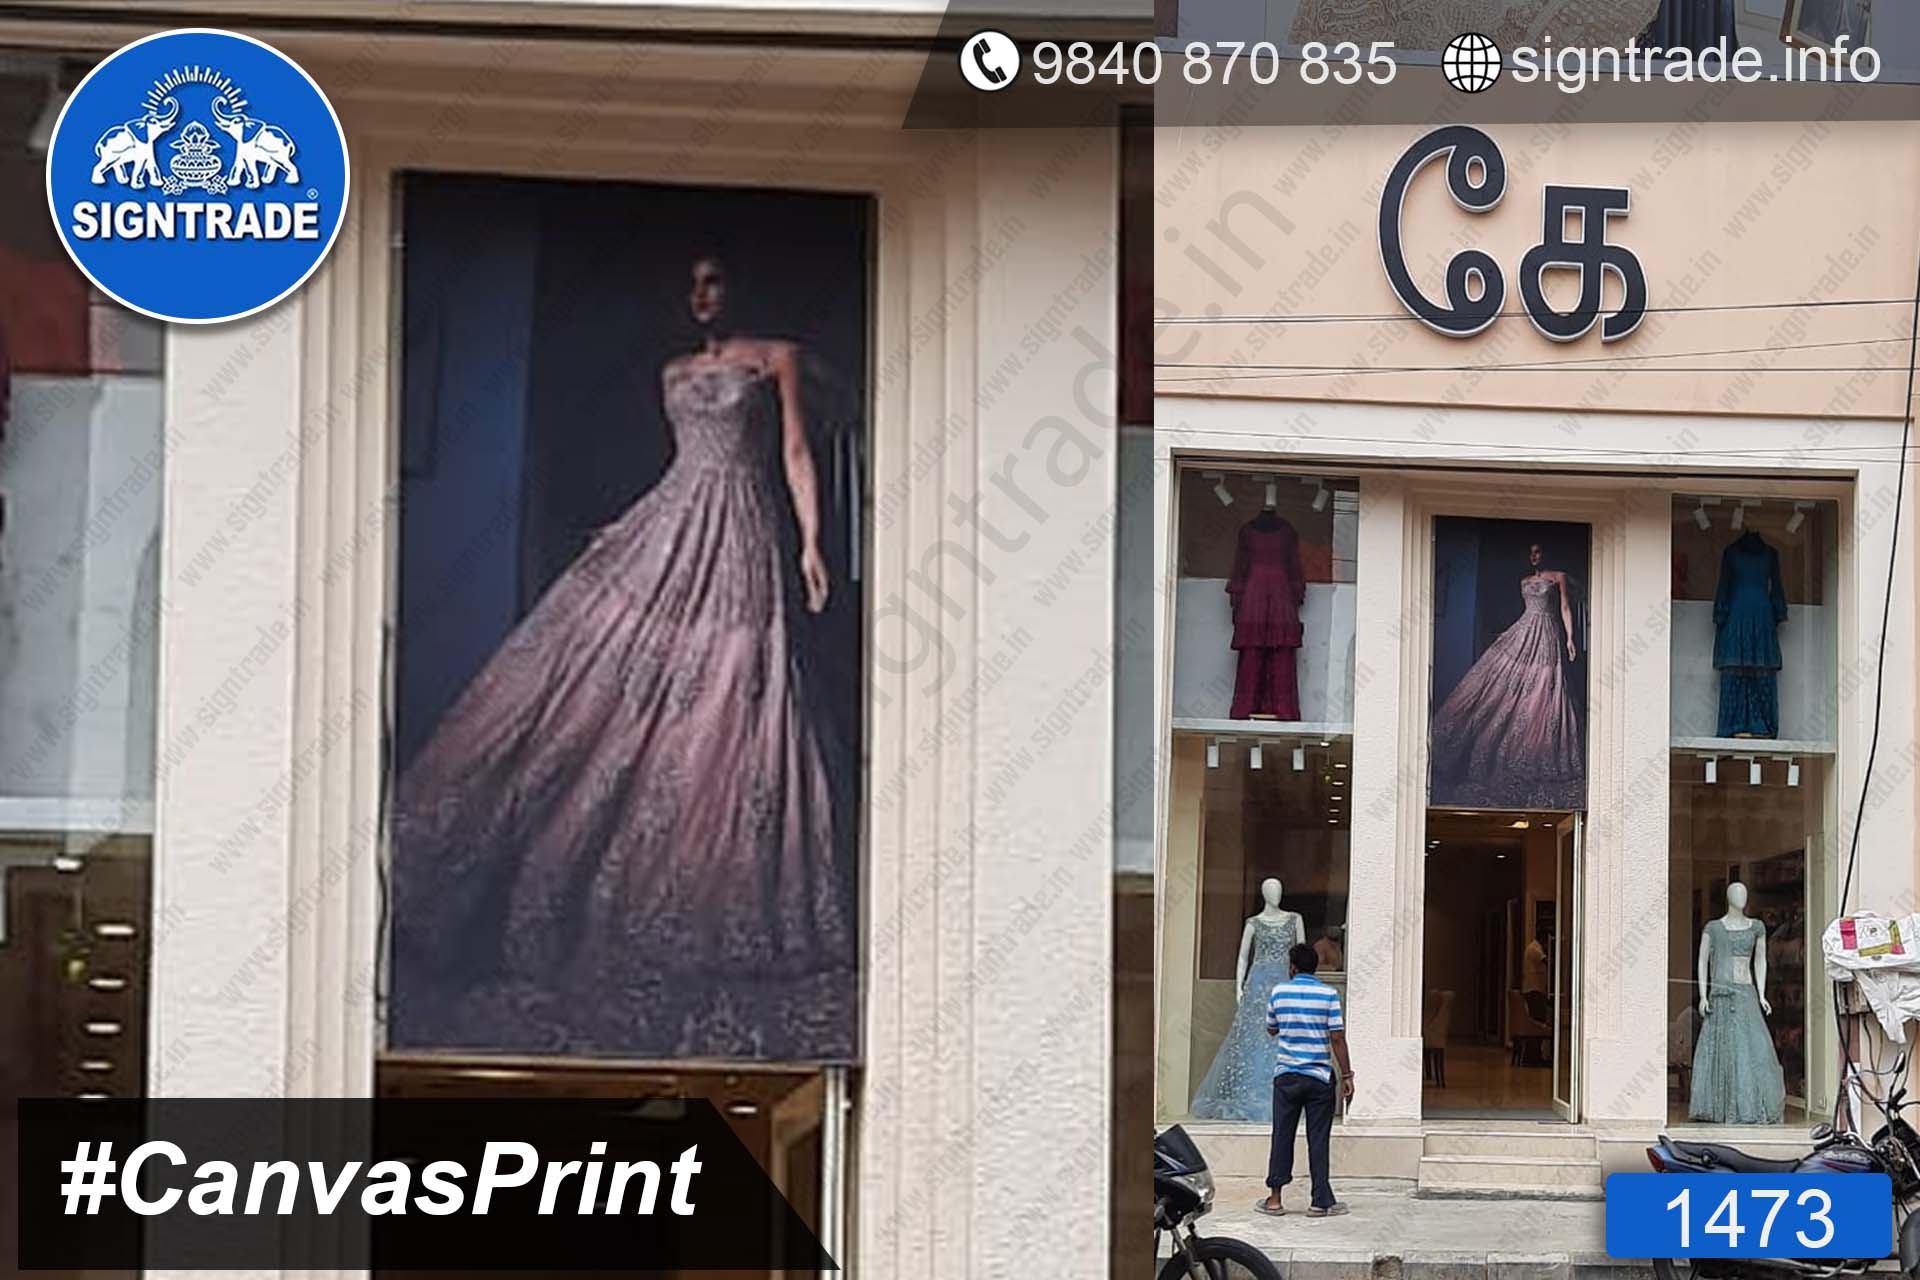 Kay The Fashion Bay - Canvas Print, SIGNTRADE - Digital Printing Service in Chennai